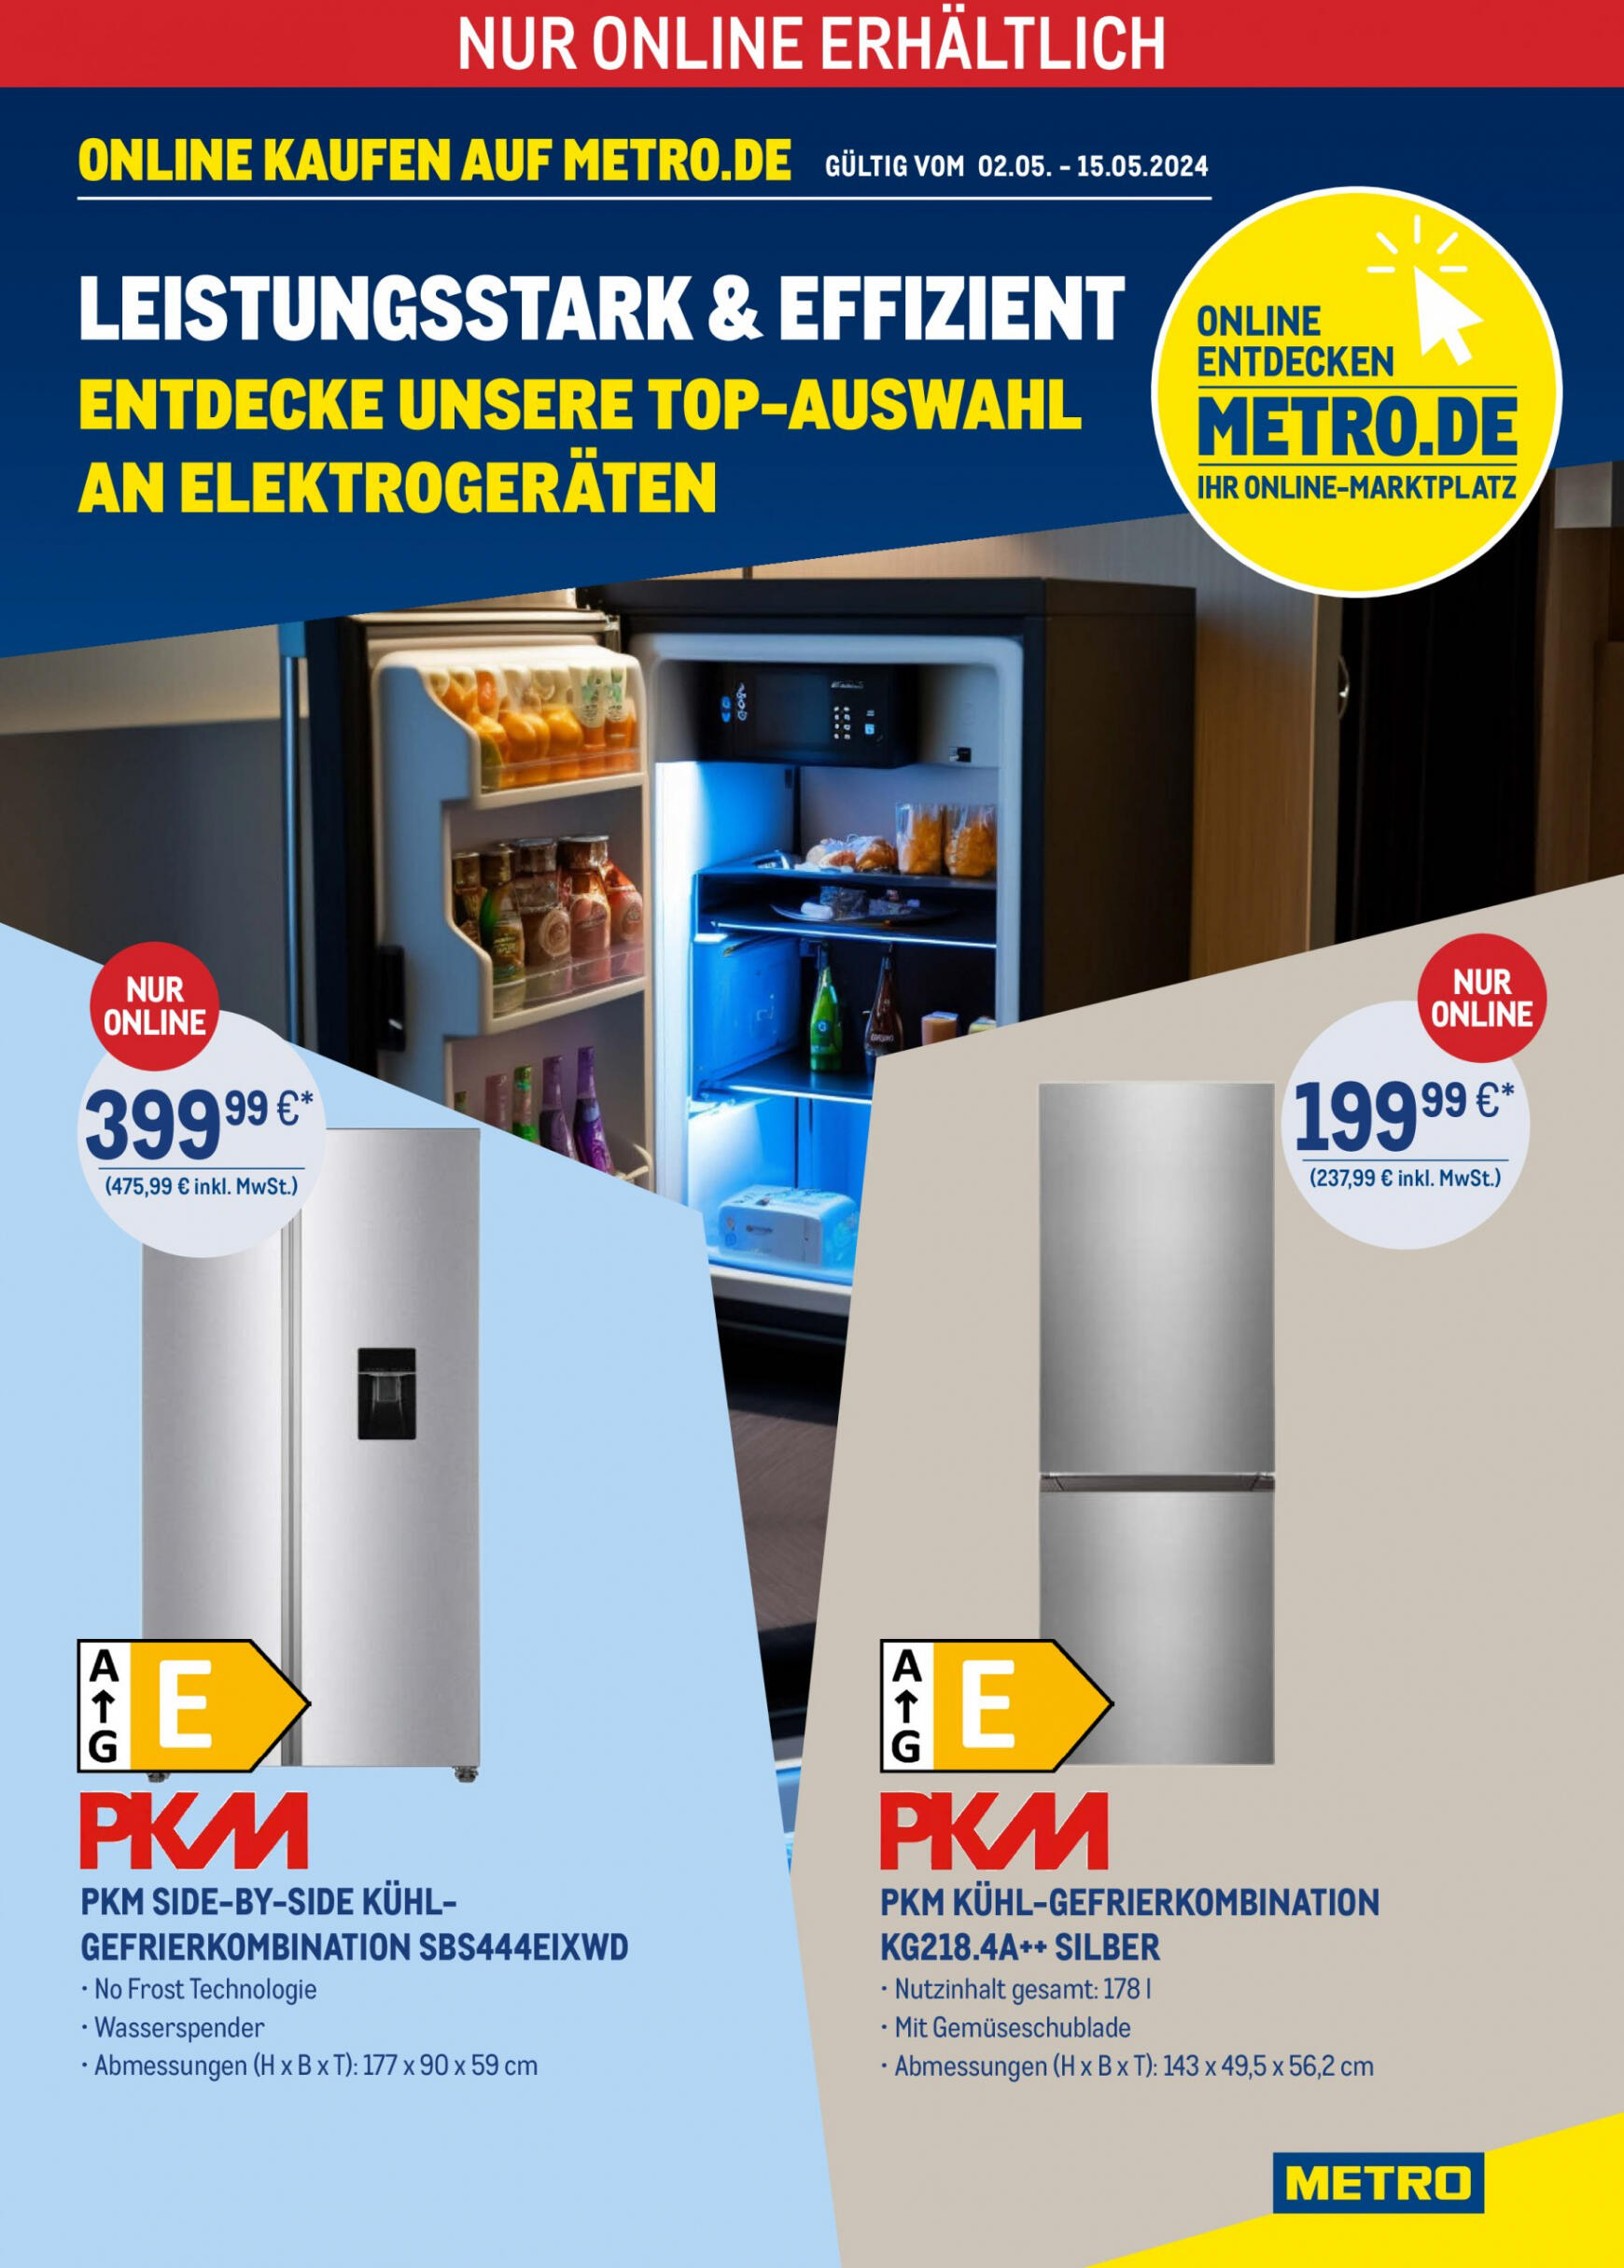 metro - Flyer Metro - Leistungsstark & Effizient aktuell 02.05. - 15.05. - page: 1